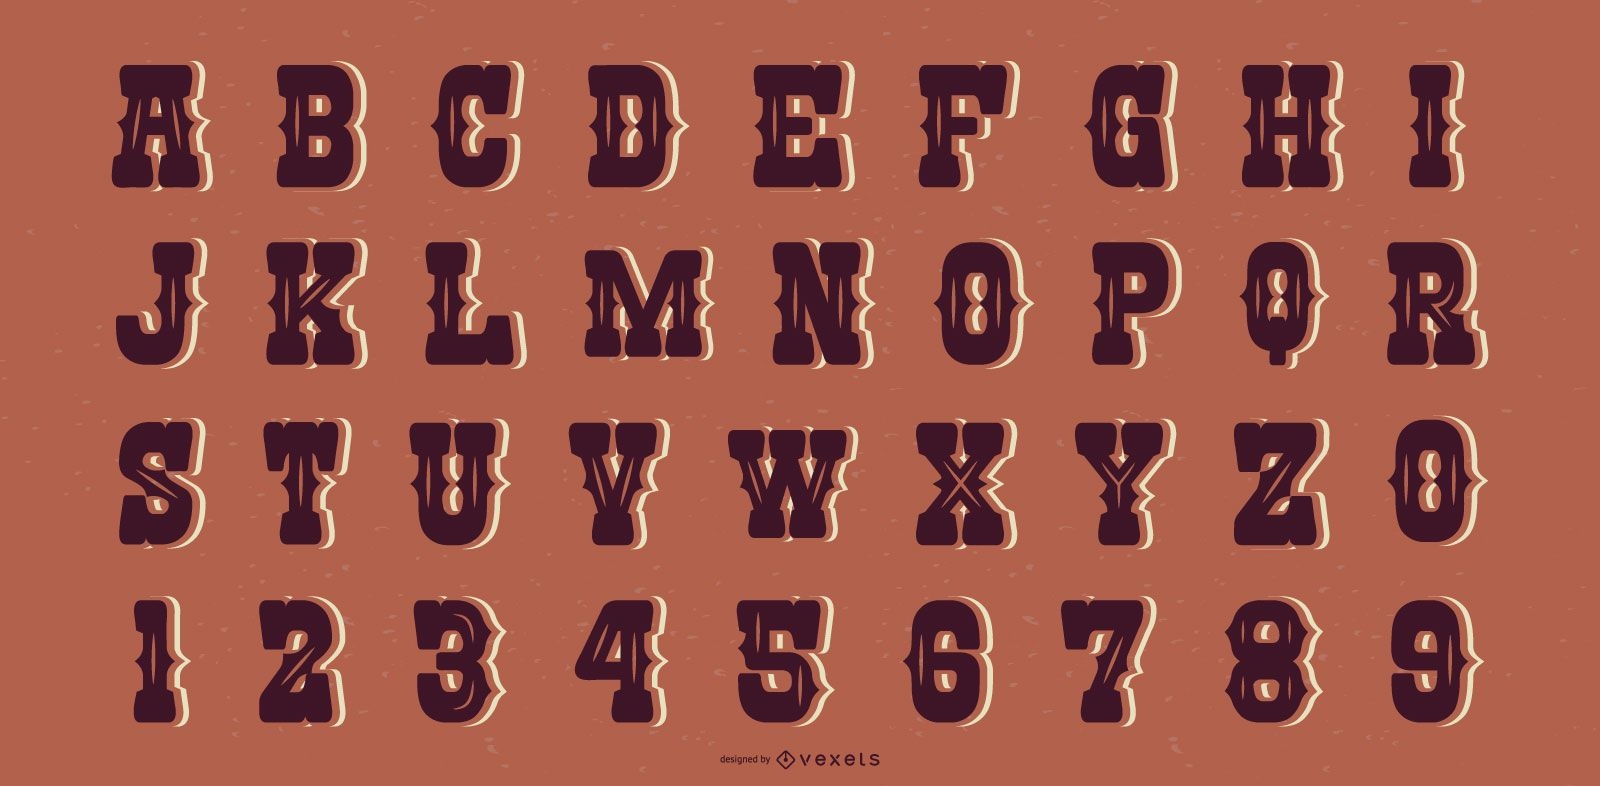 Alphabetische Buchstabensammlung im westlichen Saloon-Stil